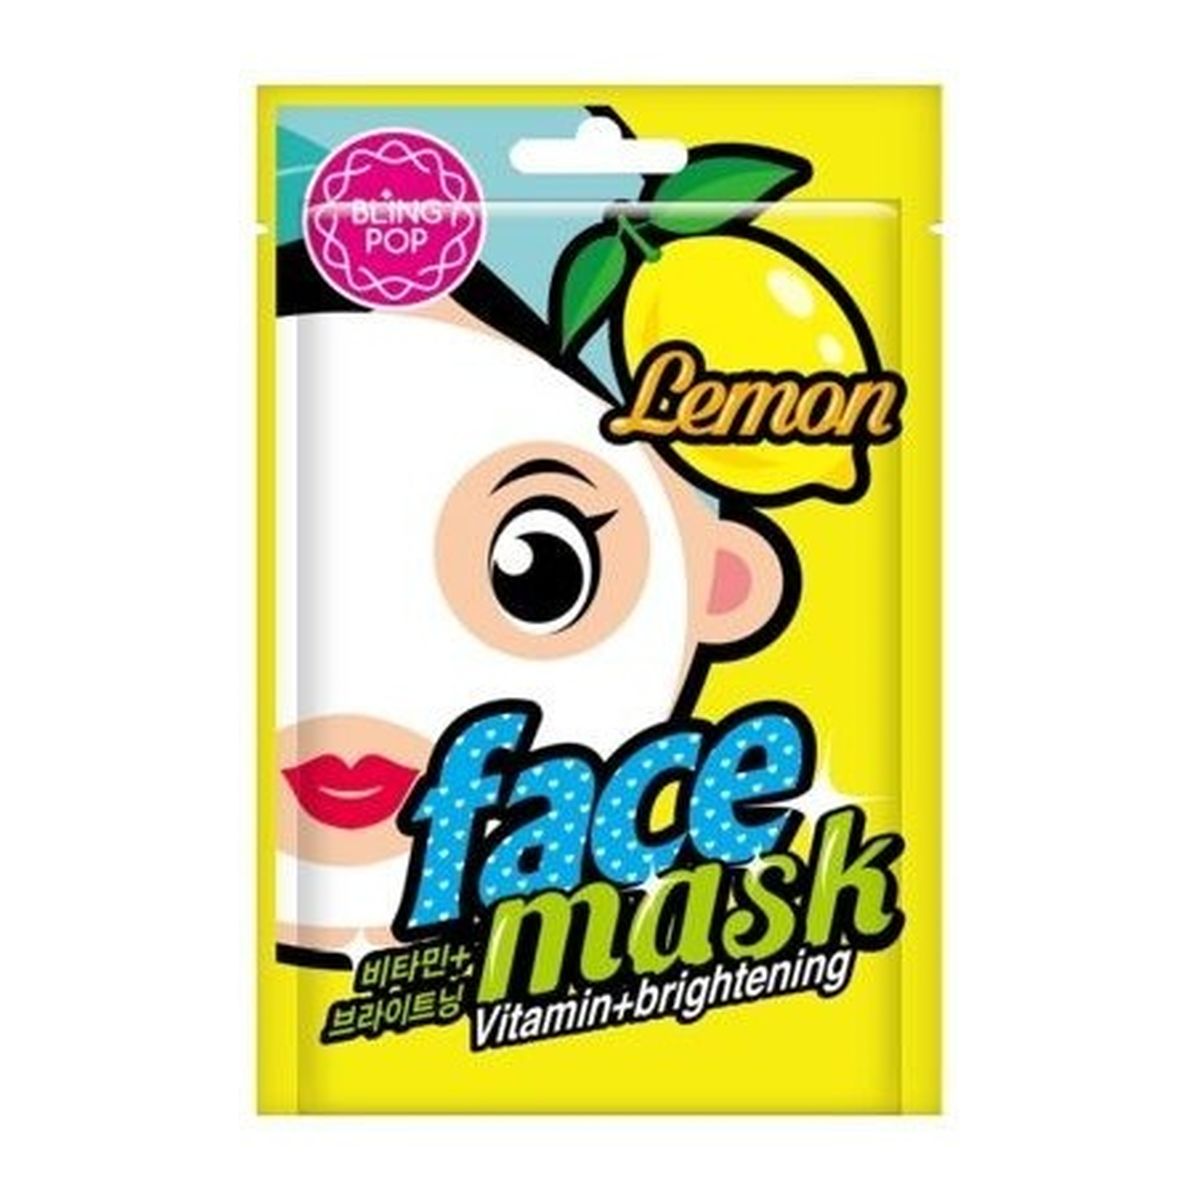 Bling Pop Vitamin & Brightening odżywiająco-rozświetlająca maska w płachcie Lemon 20ml